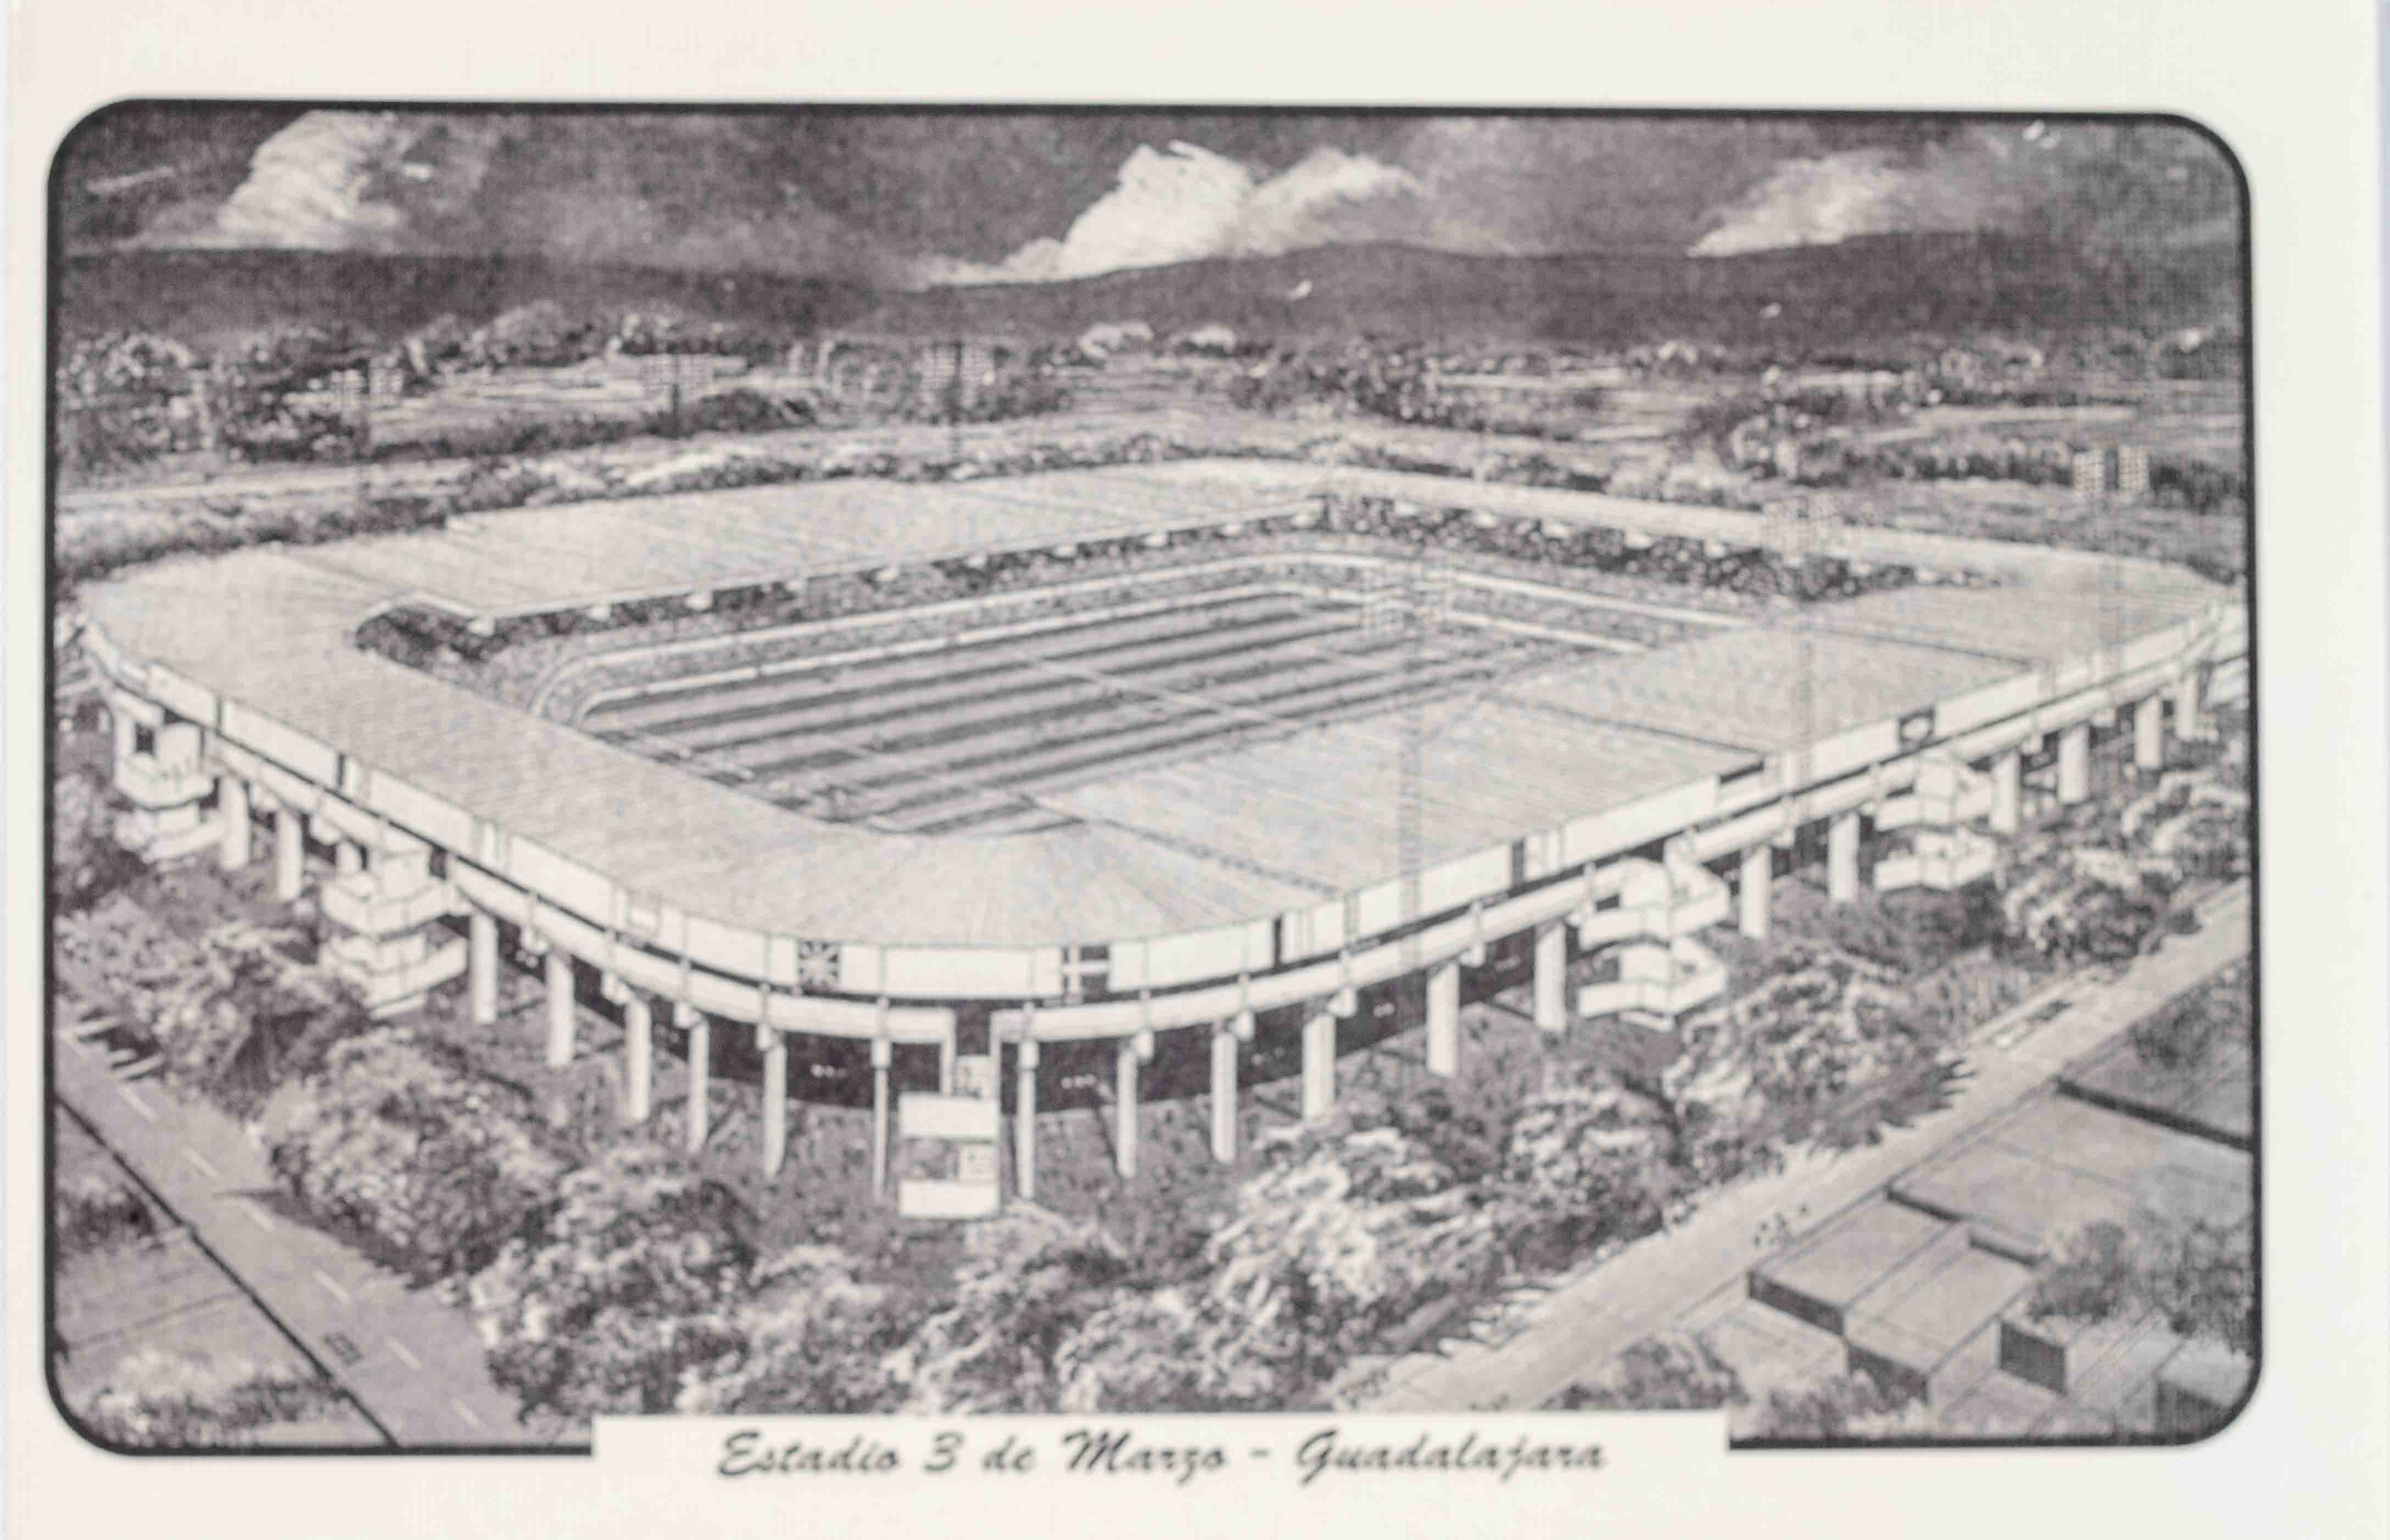 Pohlednice Stadion, Estadio 3 de Marzo, Guadalajara